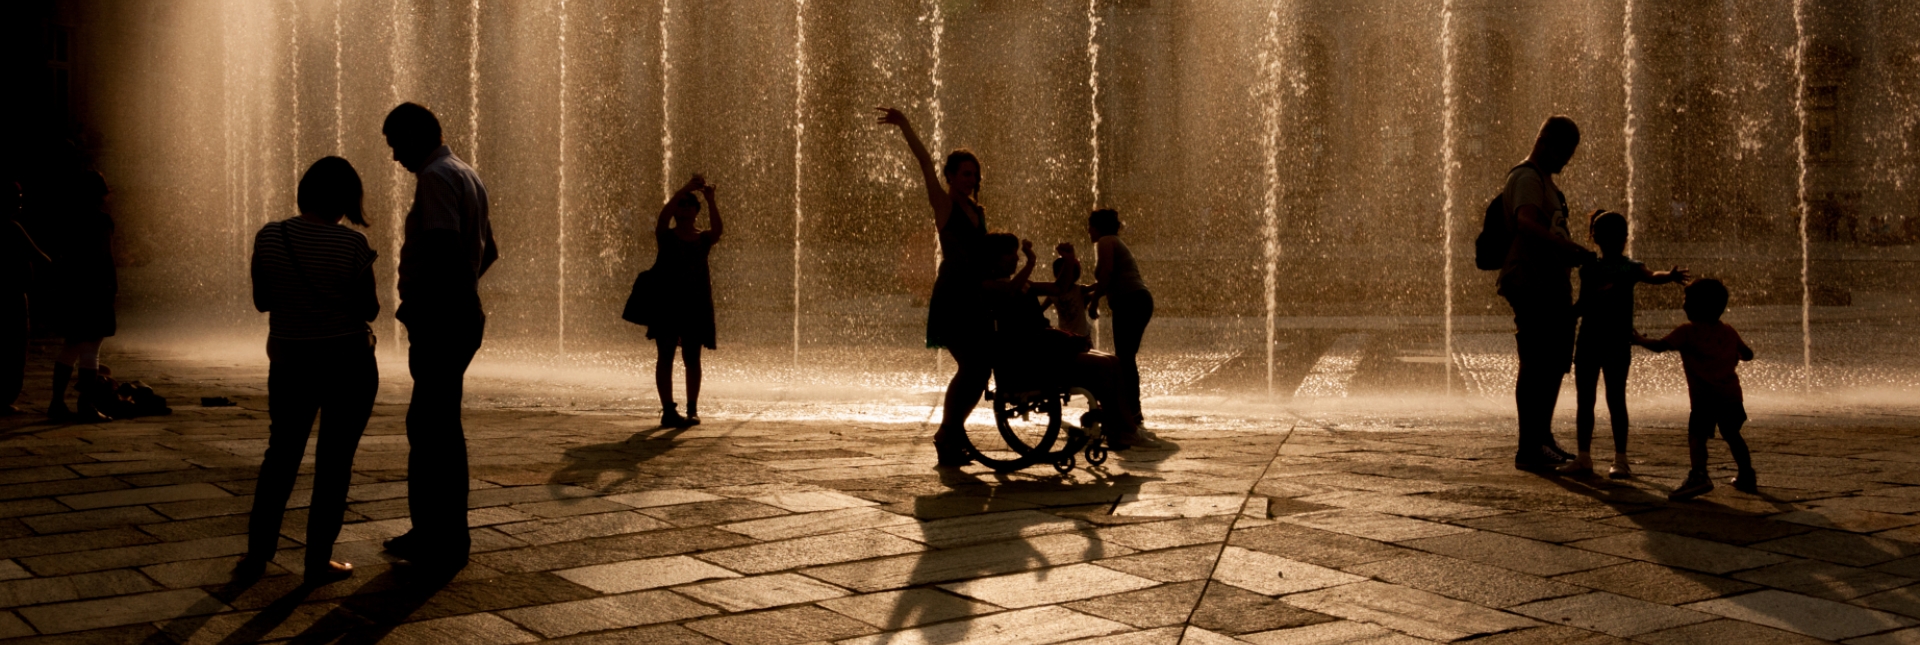 Teatro d'acqua nella Fontana del Cervo - foto di Paolo Bande